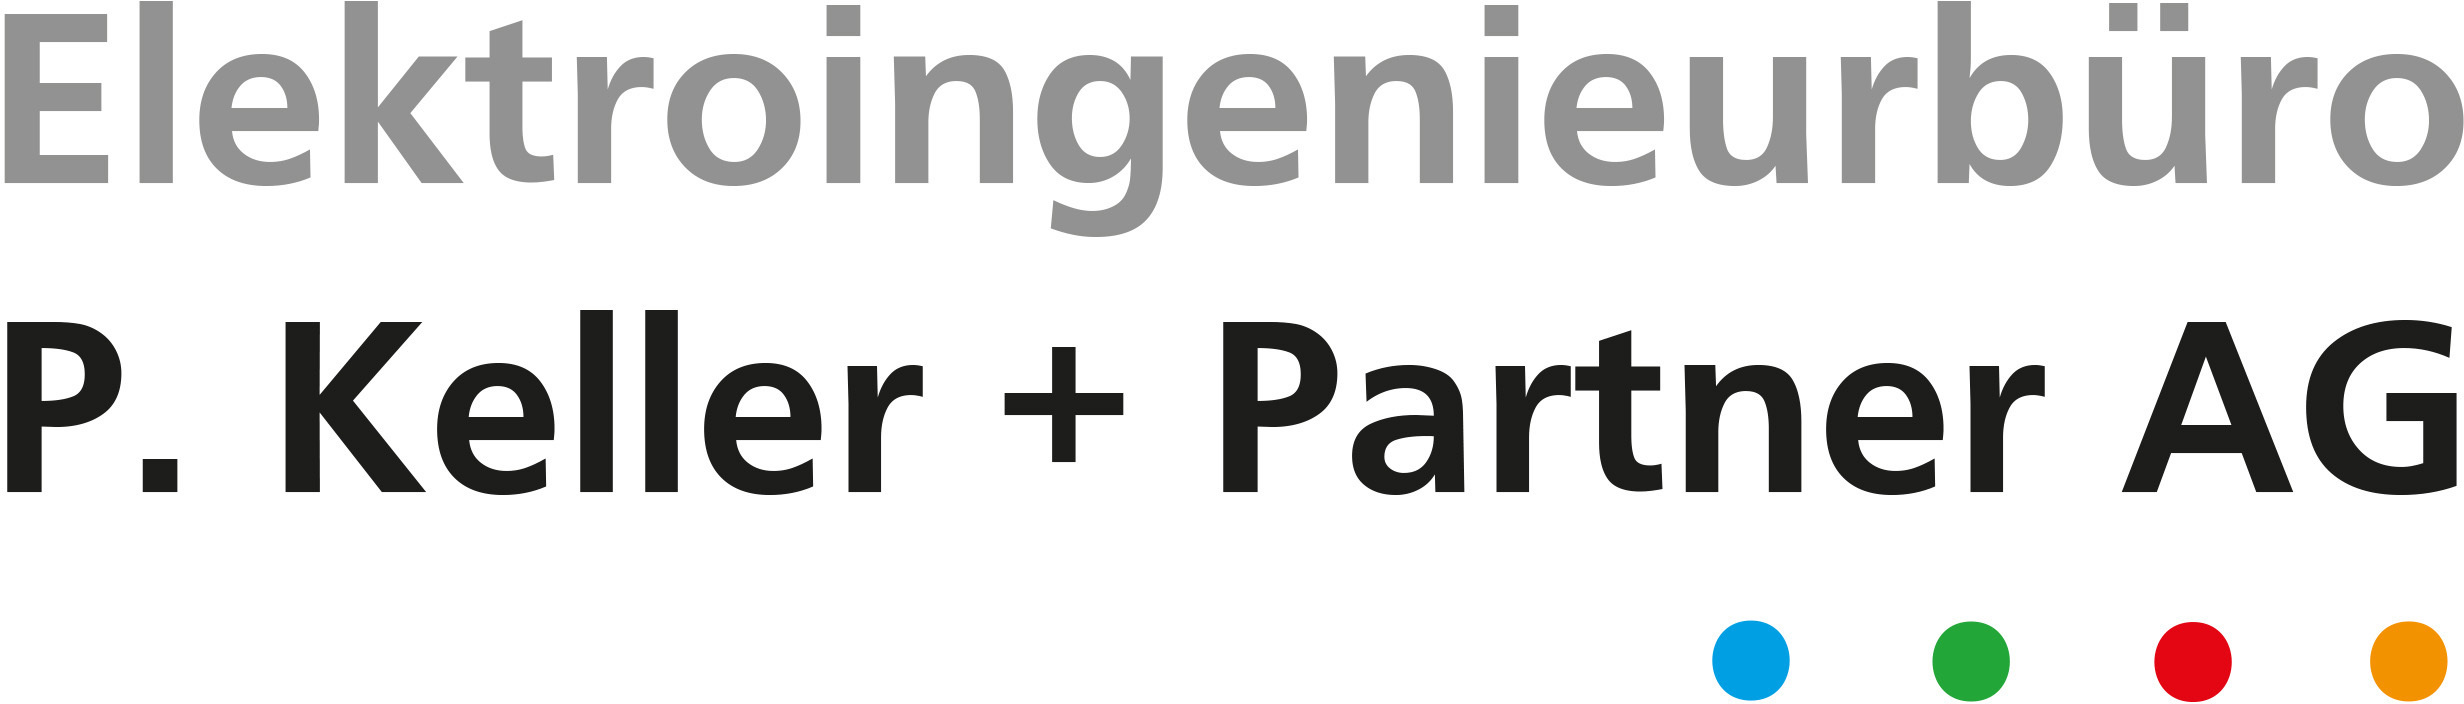 Elektroingenieurbüro P. Keller + Partner AG